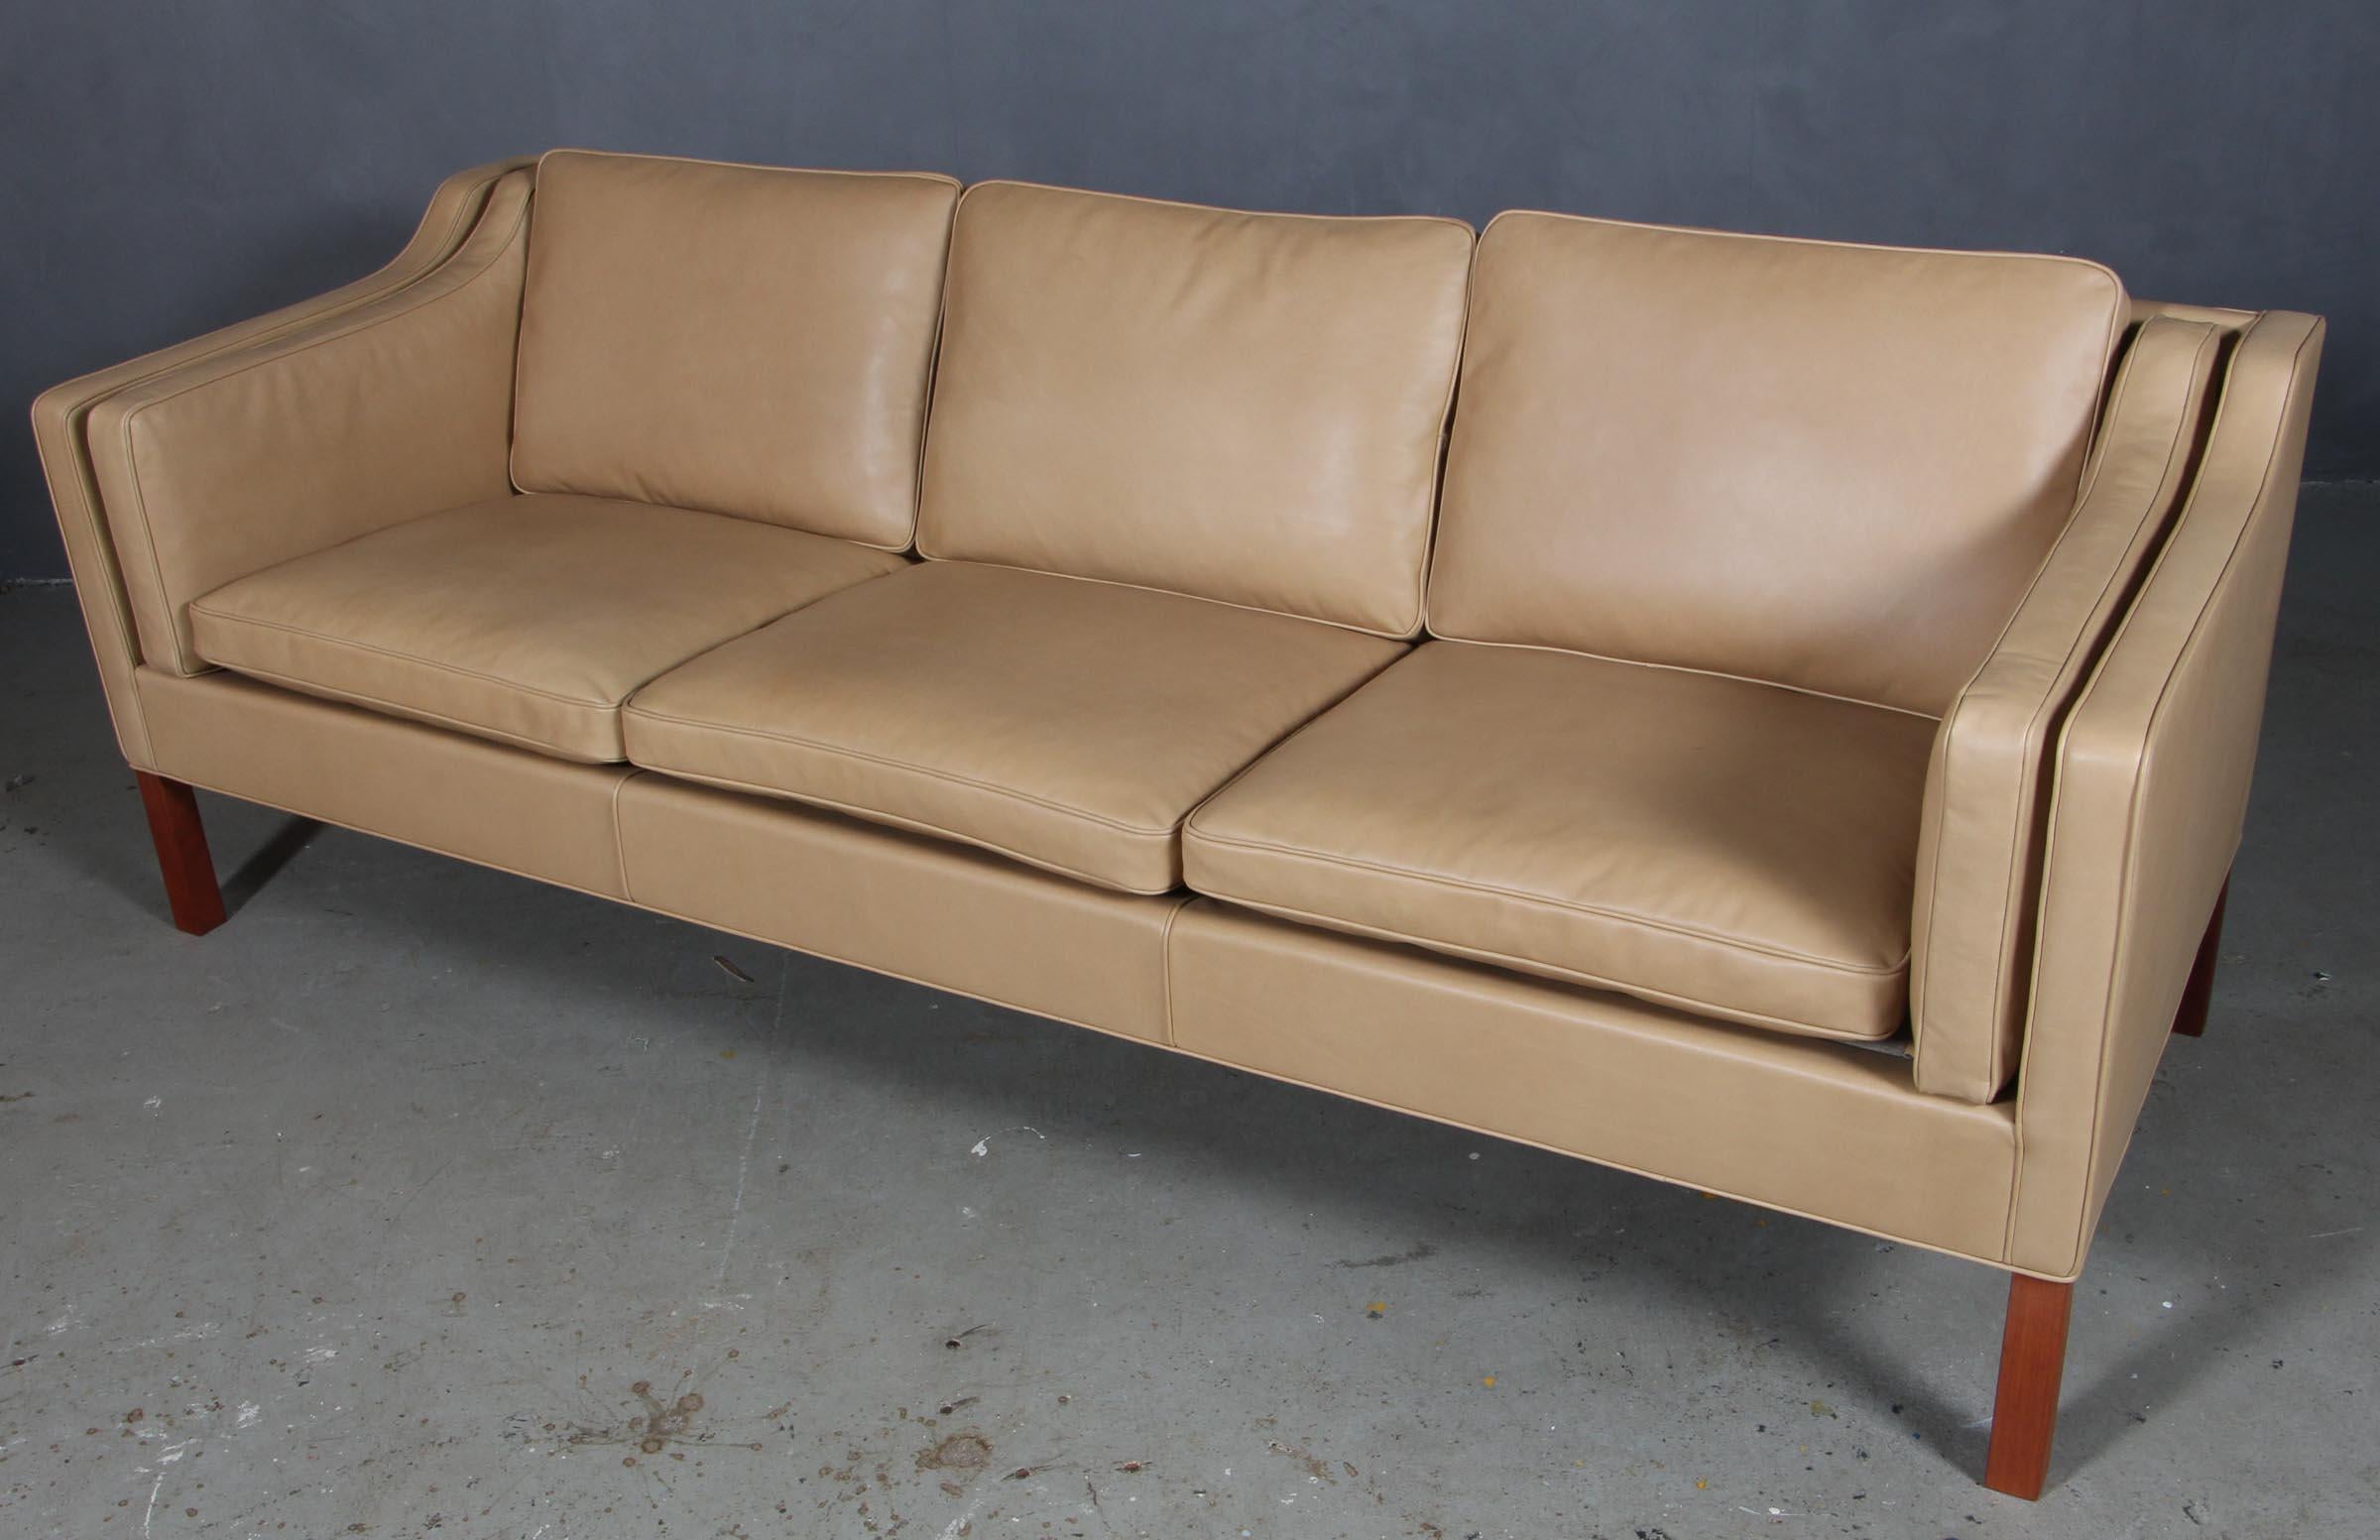 Børge Mogensen Dreisitzer-Sofa, neu gepolstert mit Jepard Anilinleder.

Beine aus Teakholz.

Modell 2213, hergestellt von Fredericia Furniture.